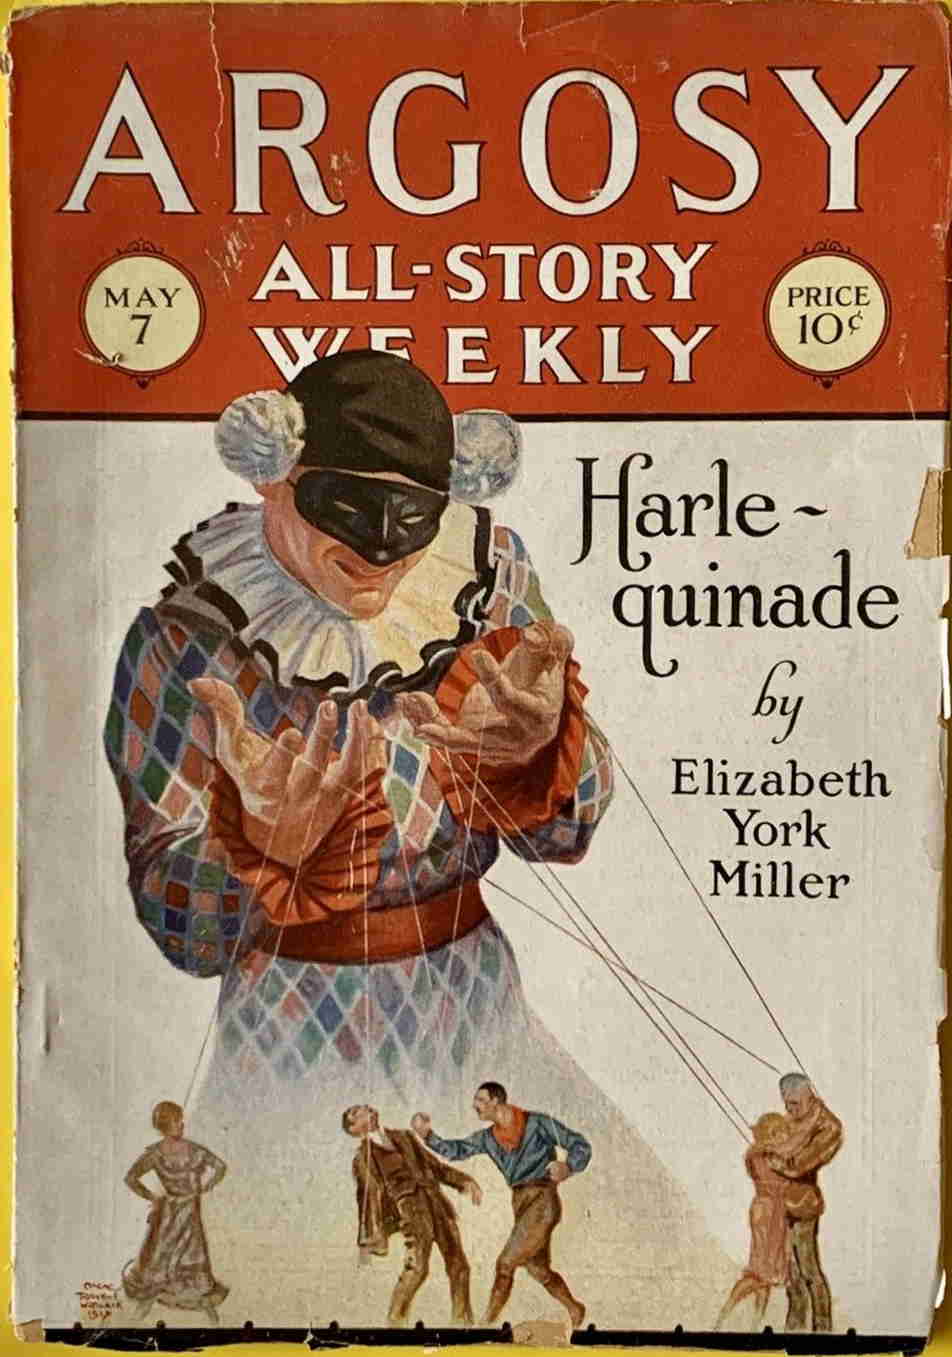 Argosy All-Story Weekly - May 5 1927